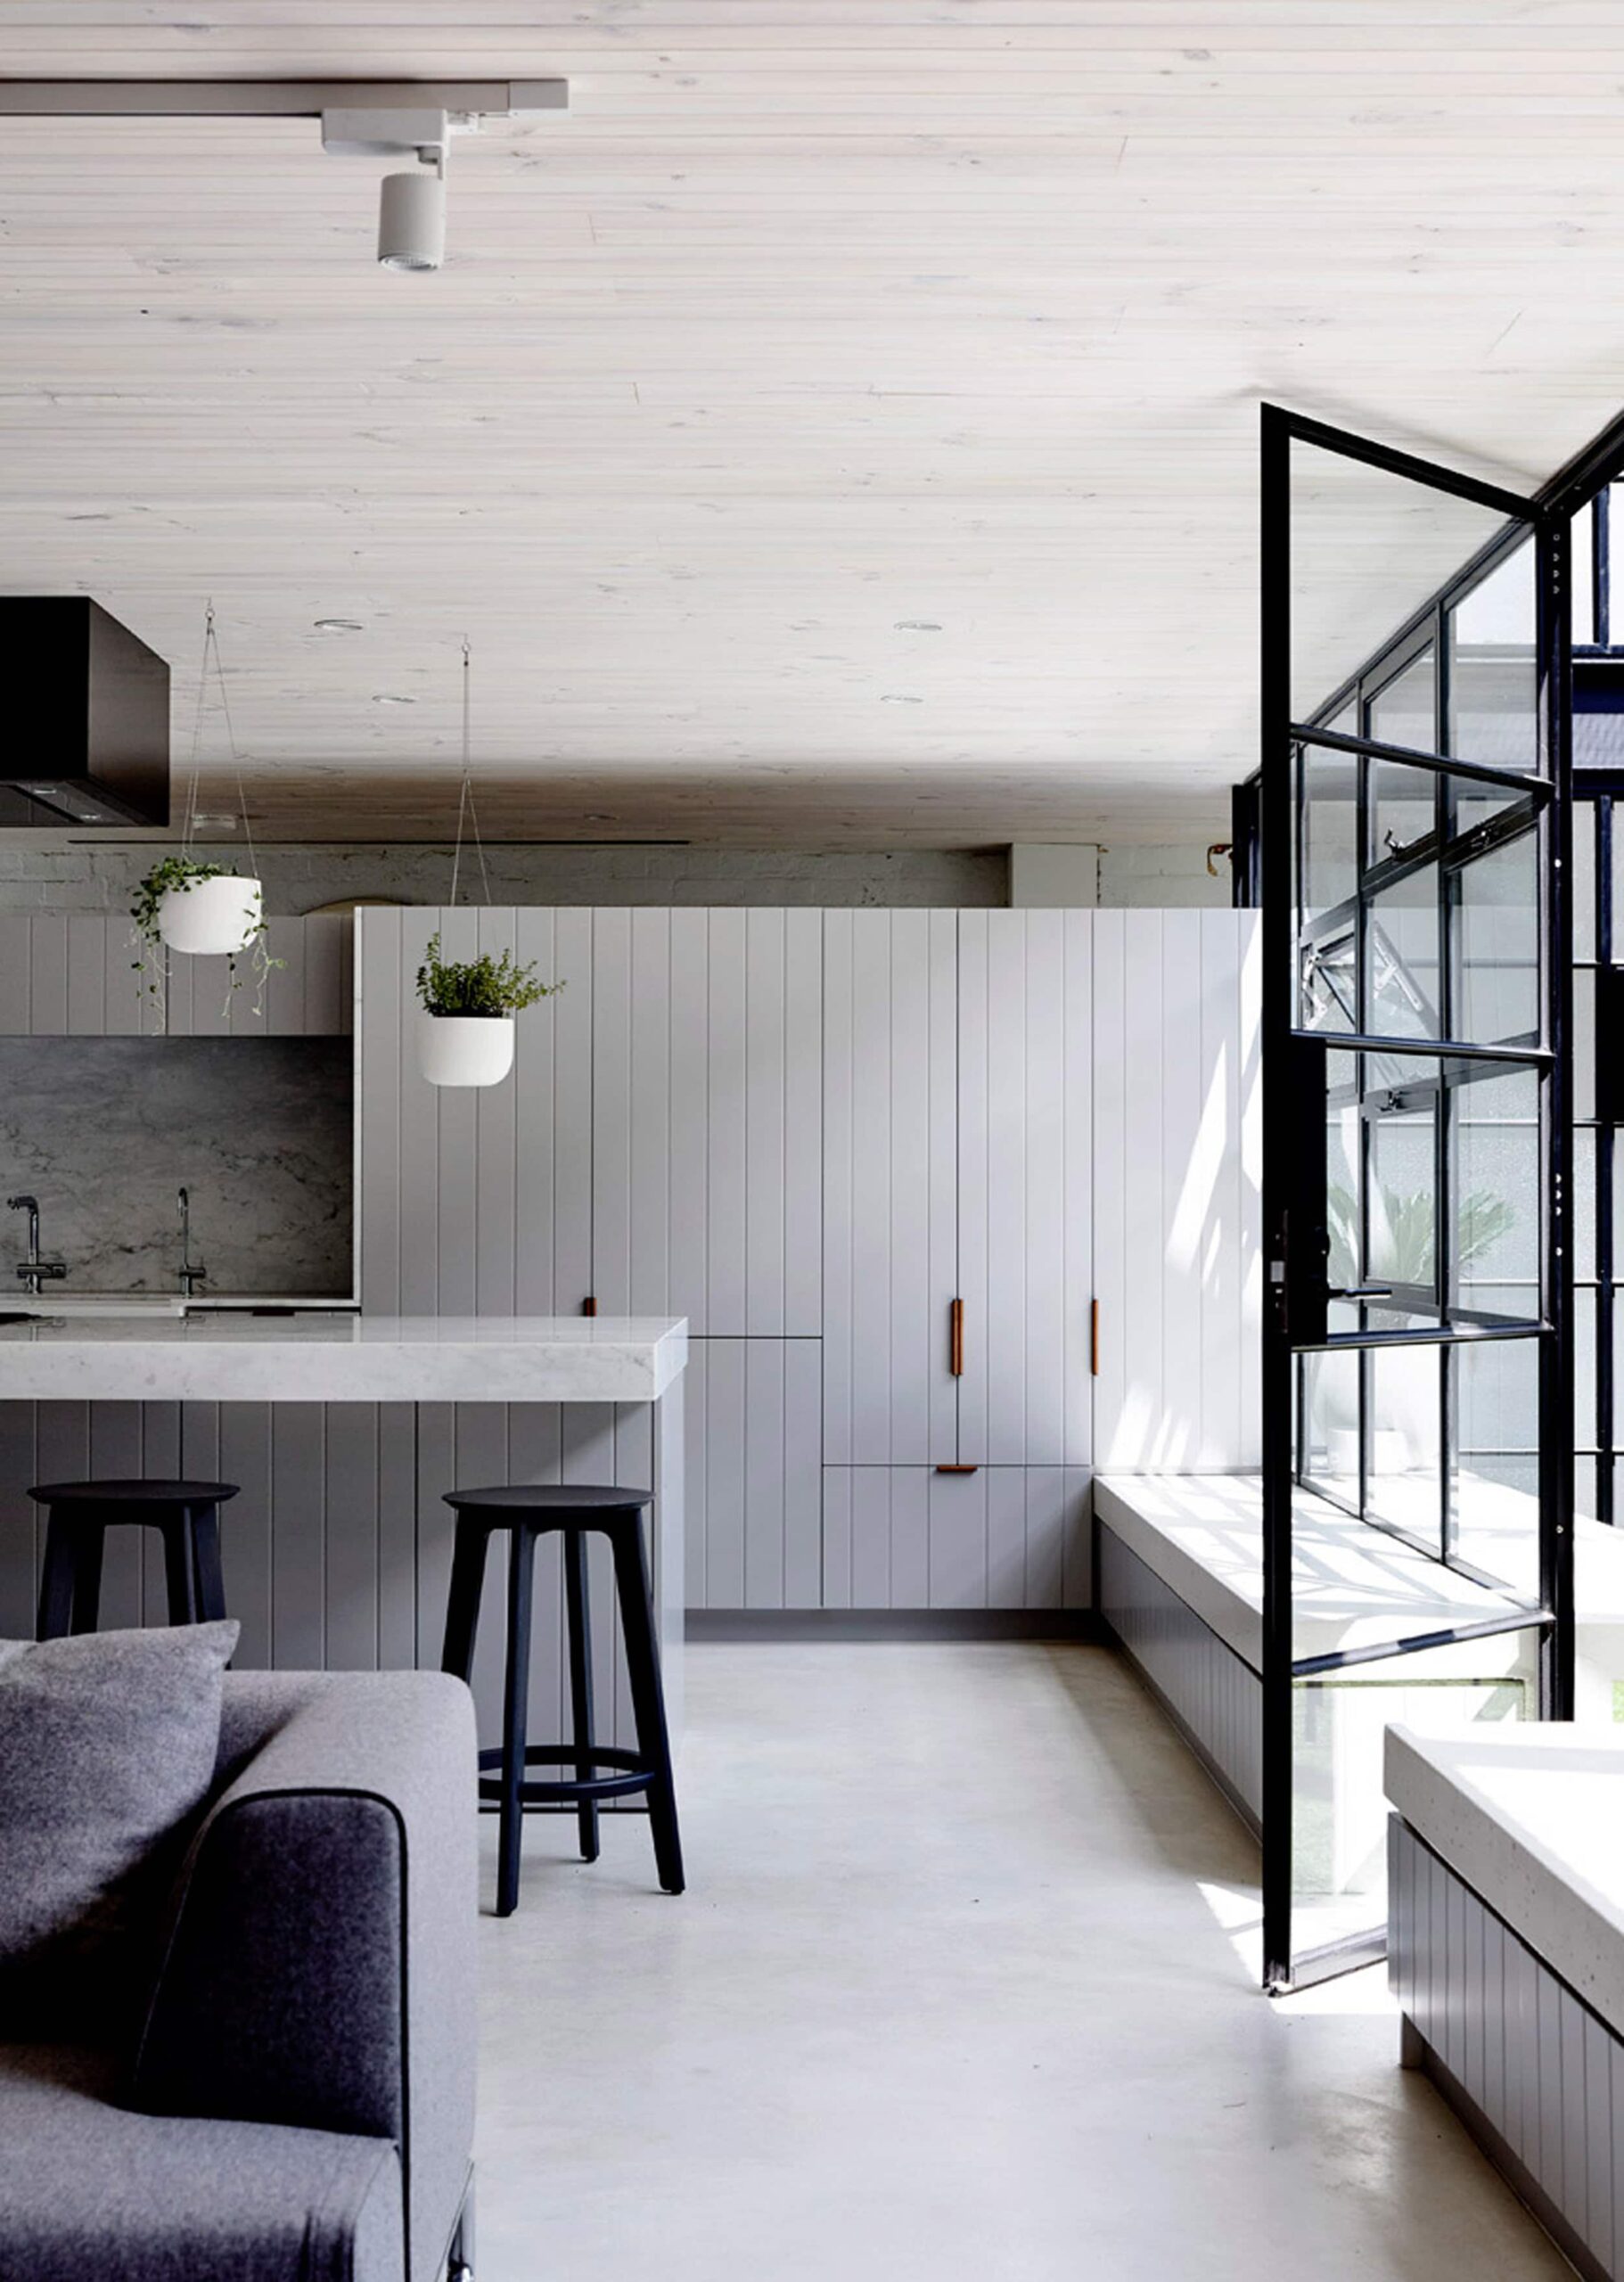 Hình ảnh 7 mẫu căn phòng nhà bếp đẹp thiết kế hiện đại trước và sau khi được cải tạo trang trí từ căn bếp cũ kĩ